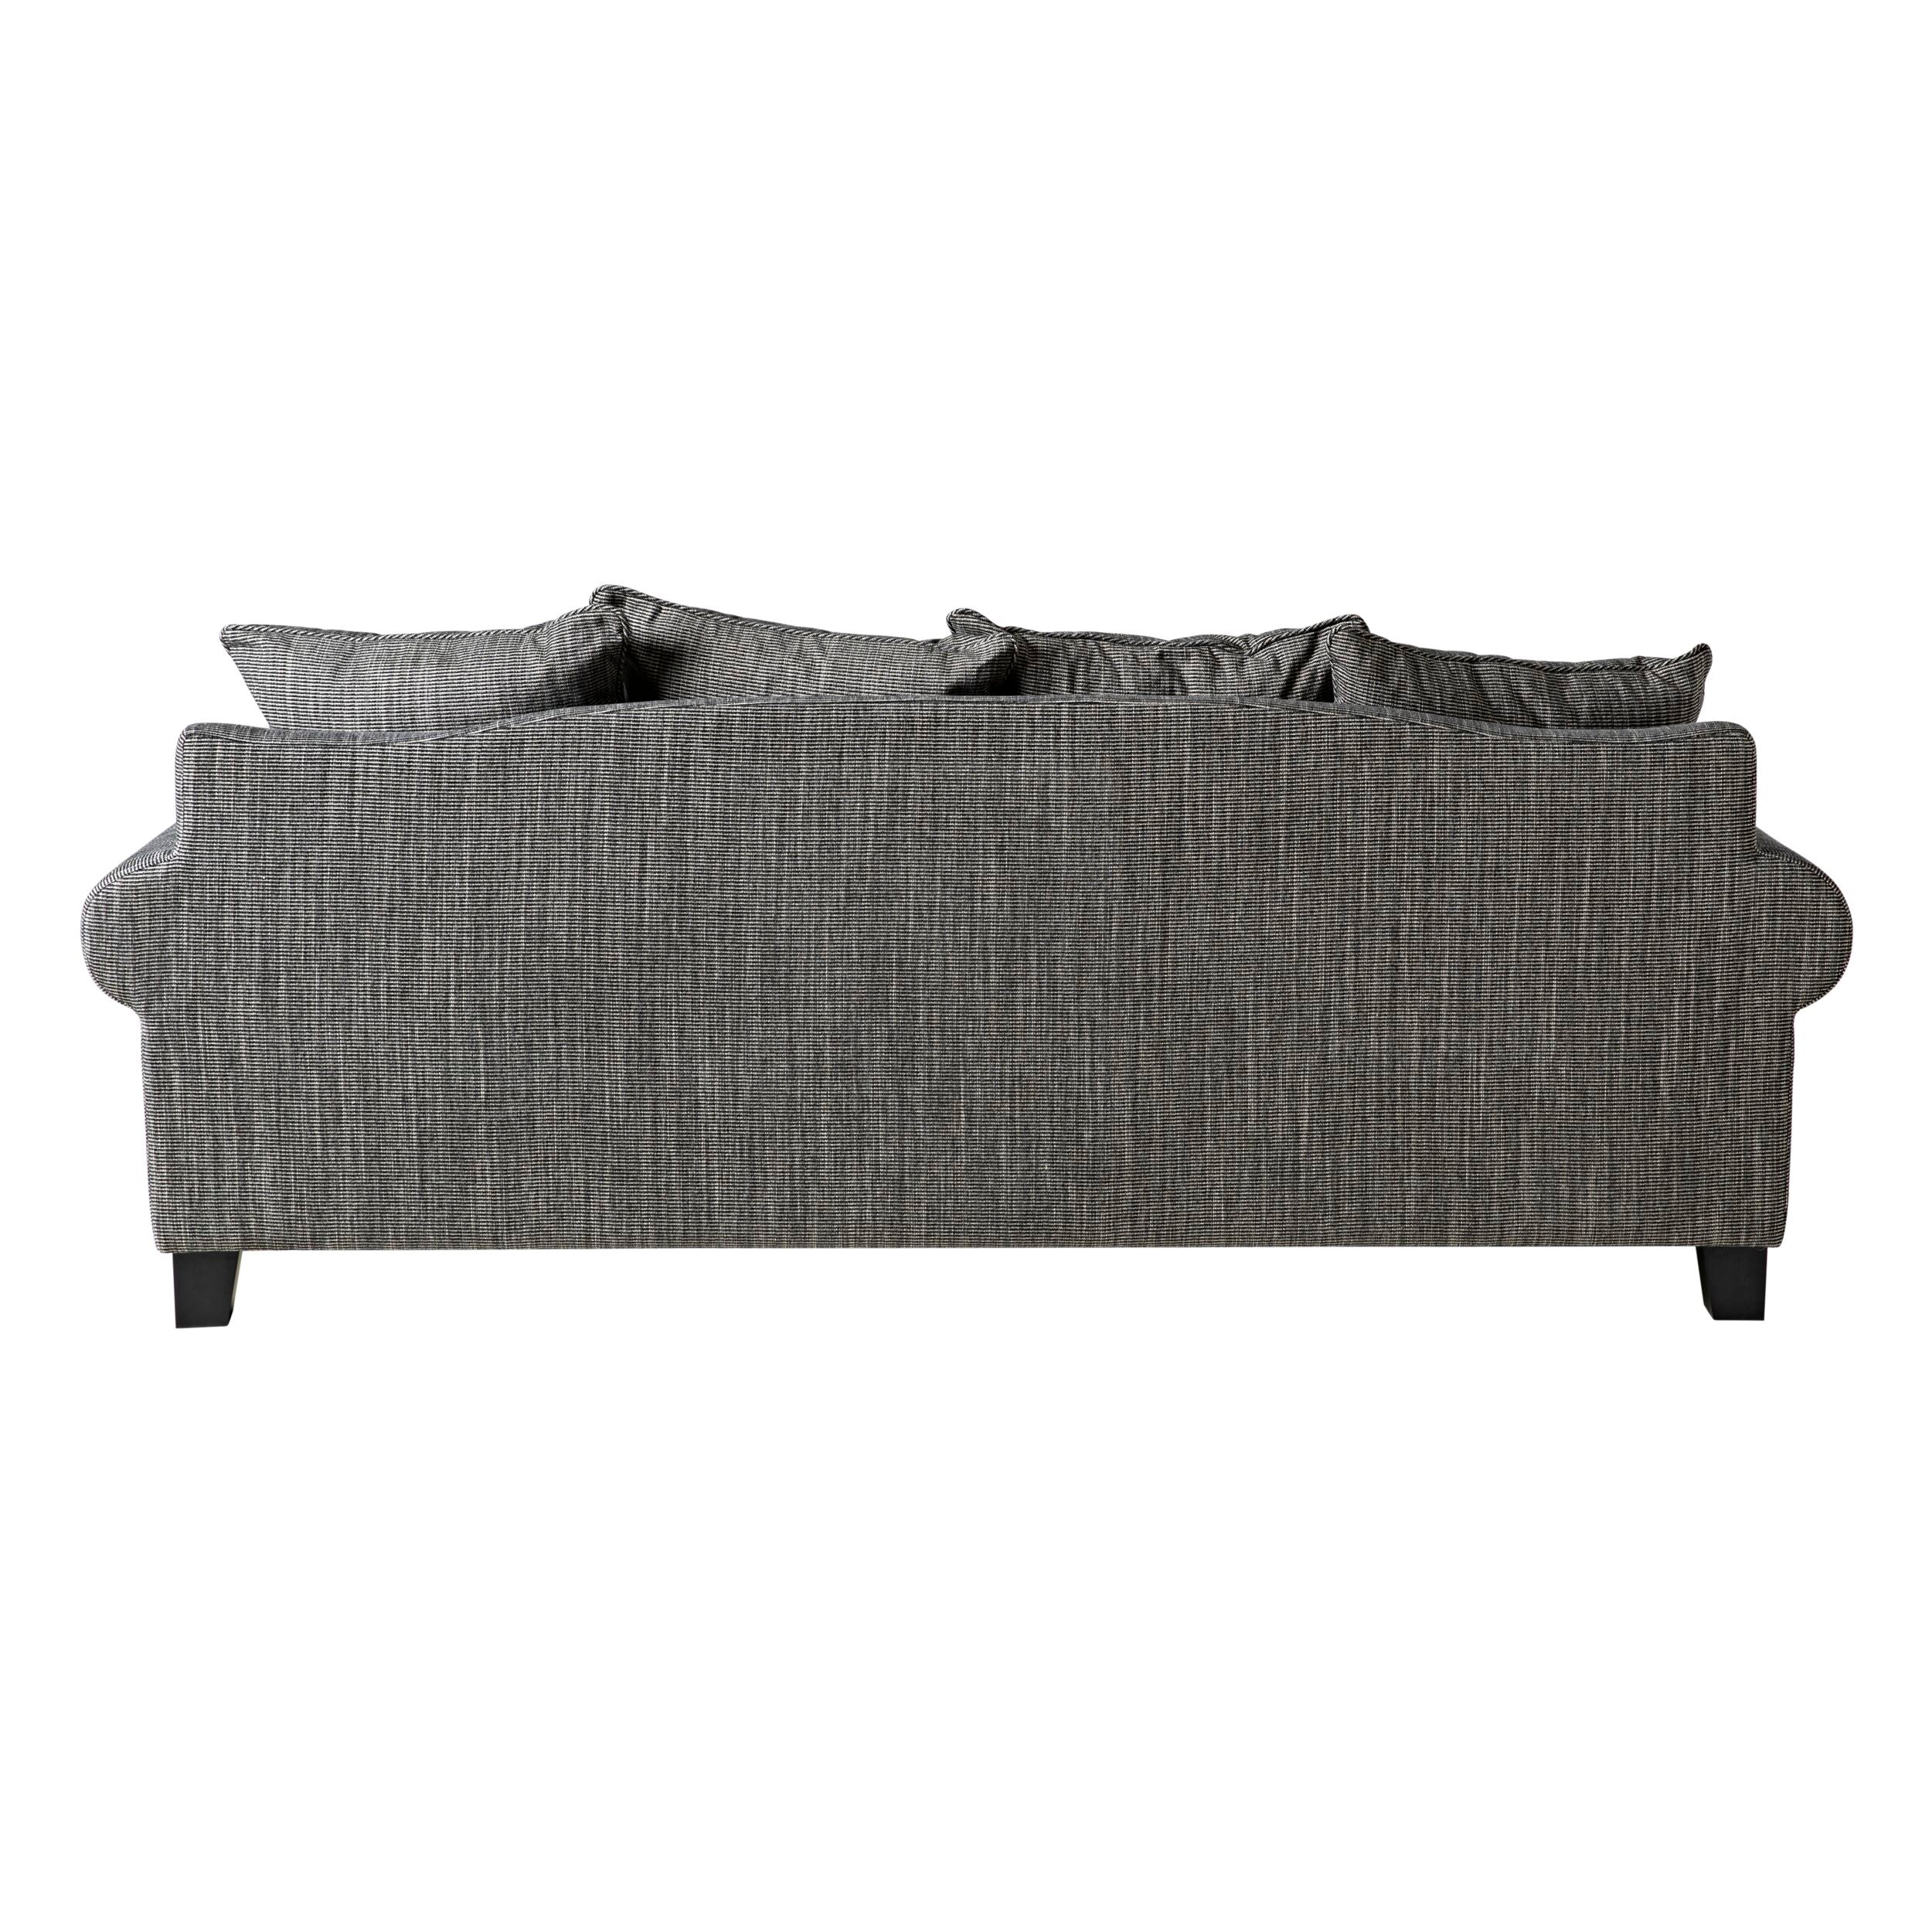 Lisette 3.5 Seater Linen Weave Sofa Black Cream ( Black Leg) Custom C-064